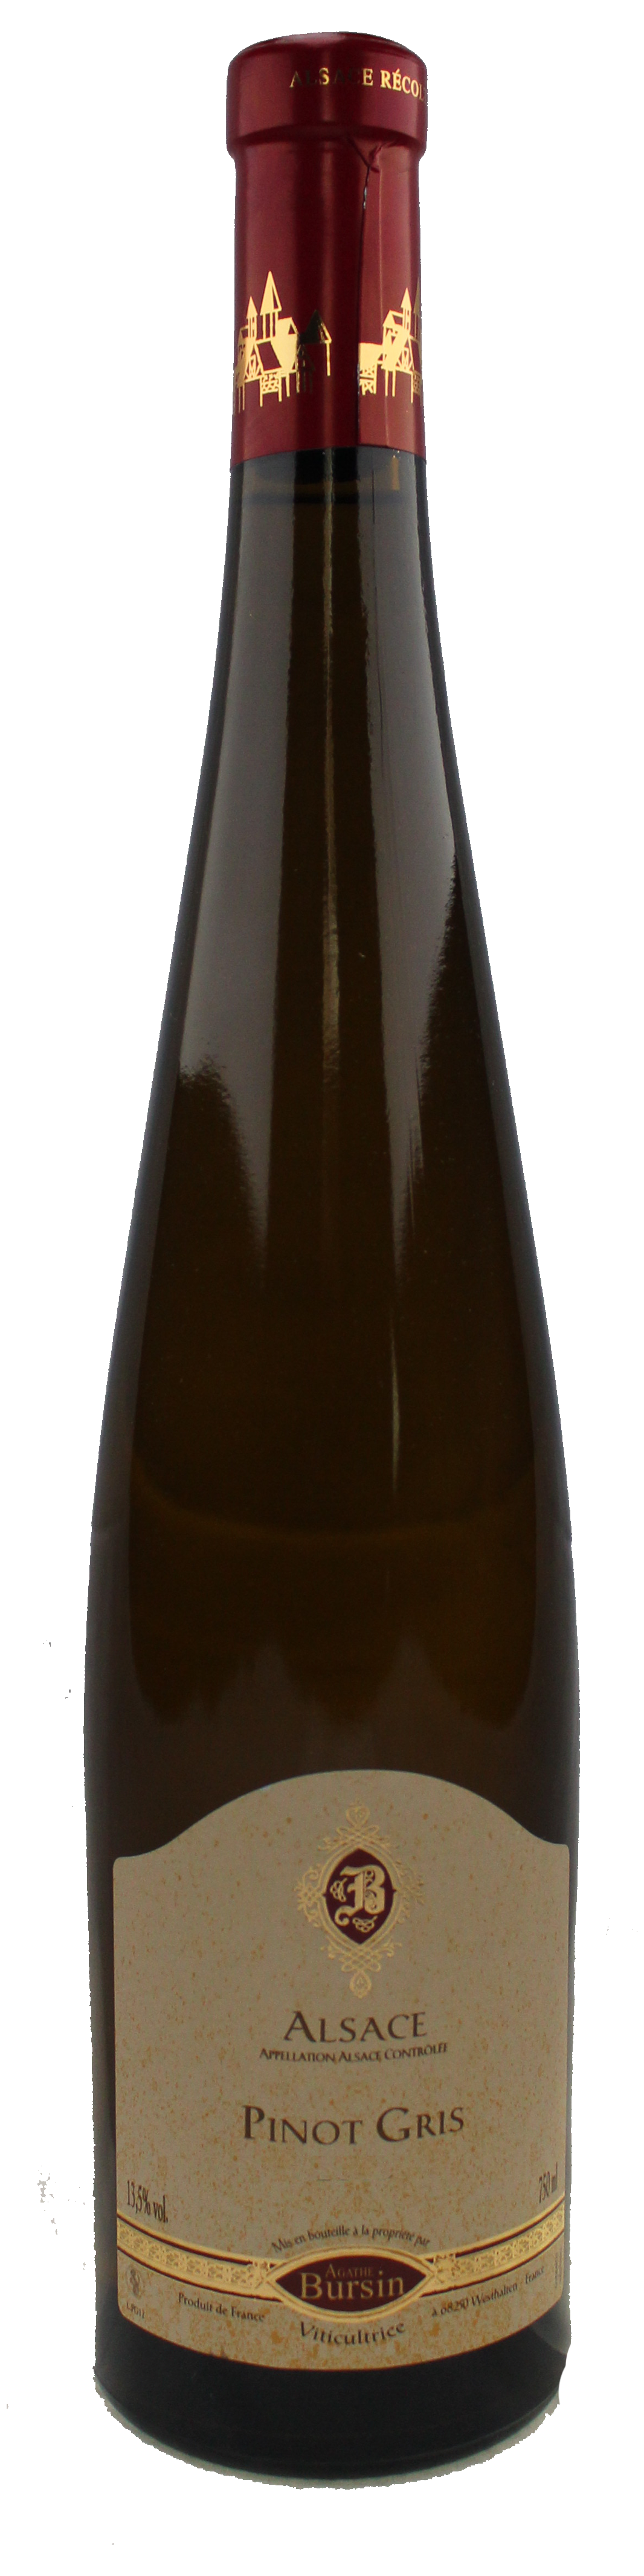 Bottle shot of 2013 Pinot Gris Dirstelberg